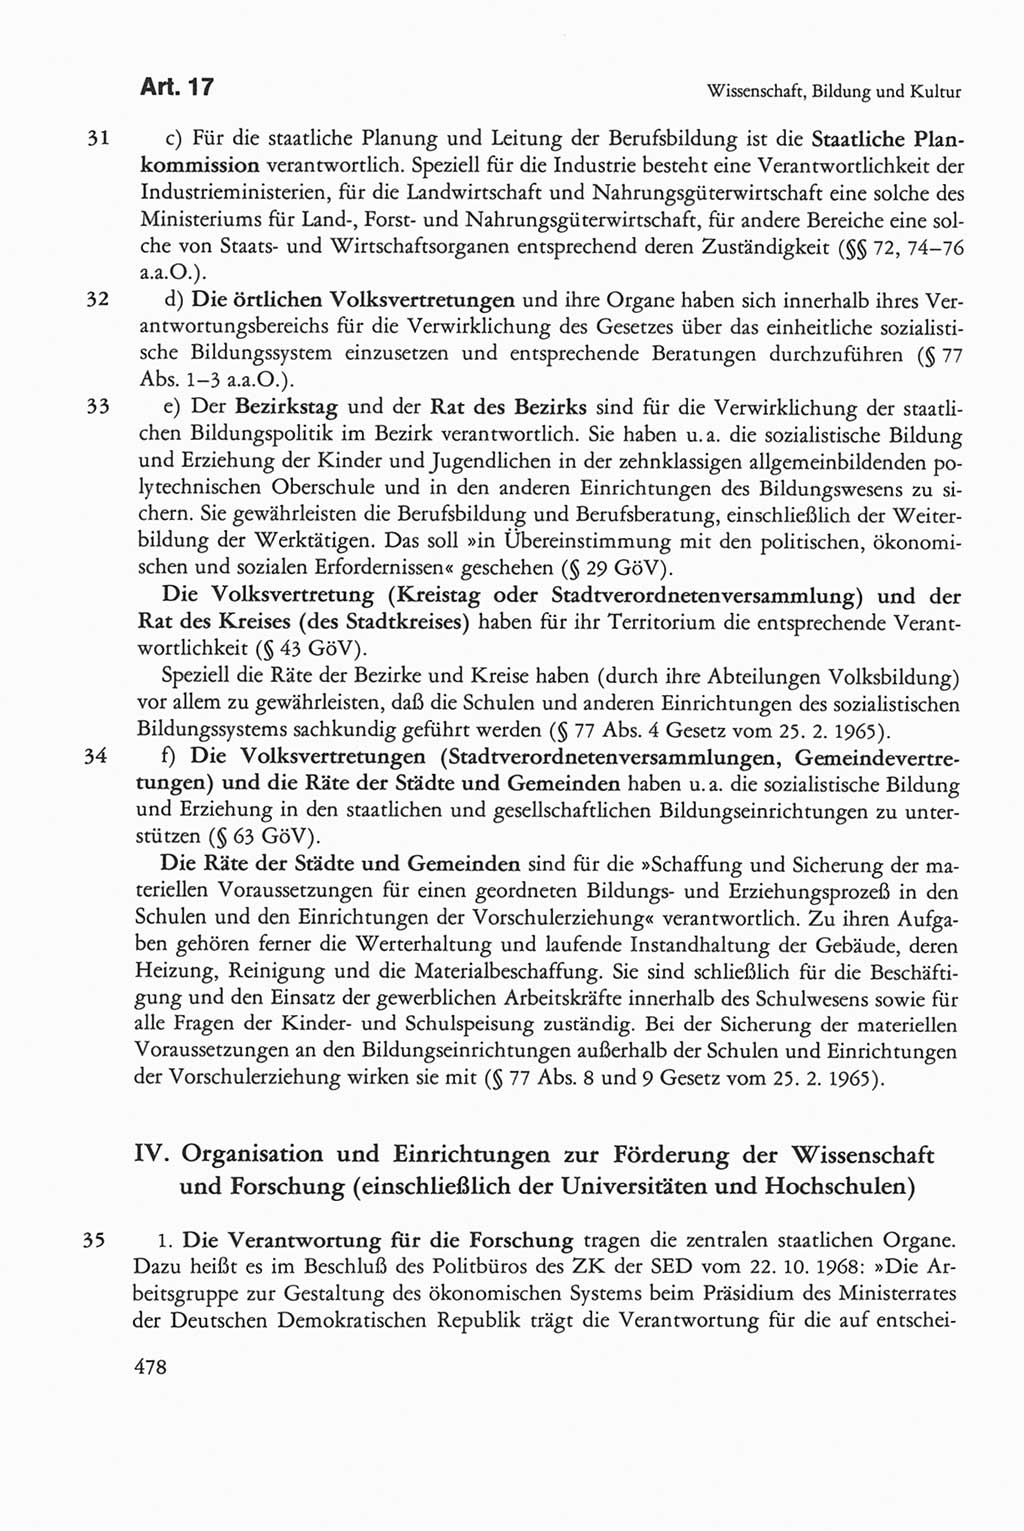 Die sozialistische Verfassung der Deutschen Demokratischen Republik (DDR), Kommentar mit einem Nachtrag 1997, Seite 478 (Soz. Verf. DDR Komm. Nachtr. 1997, S. 478)